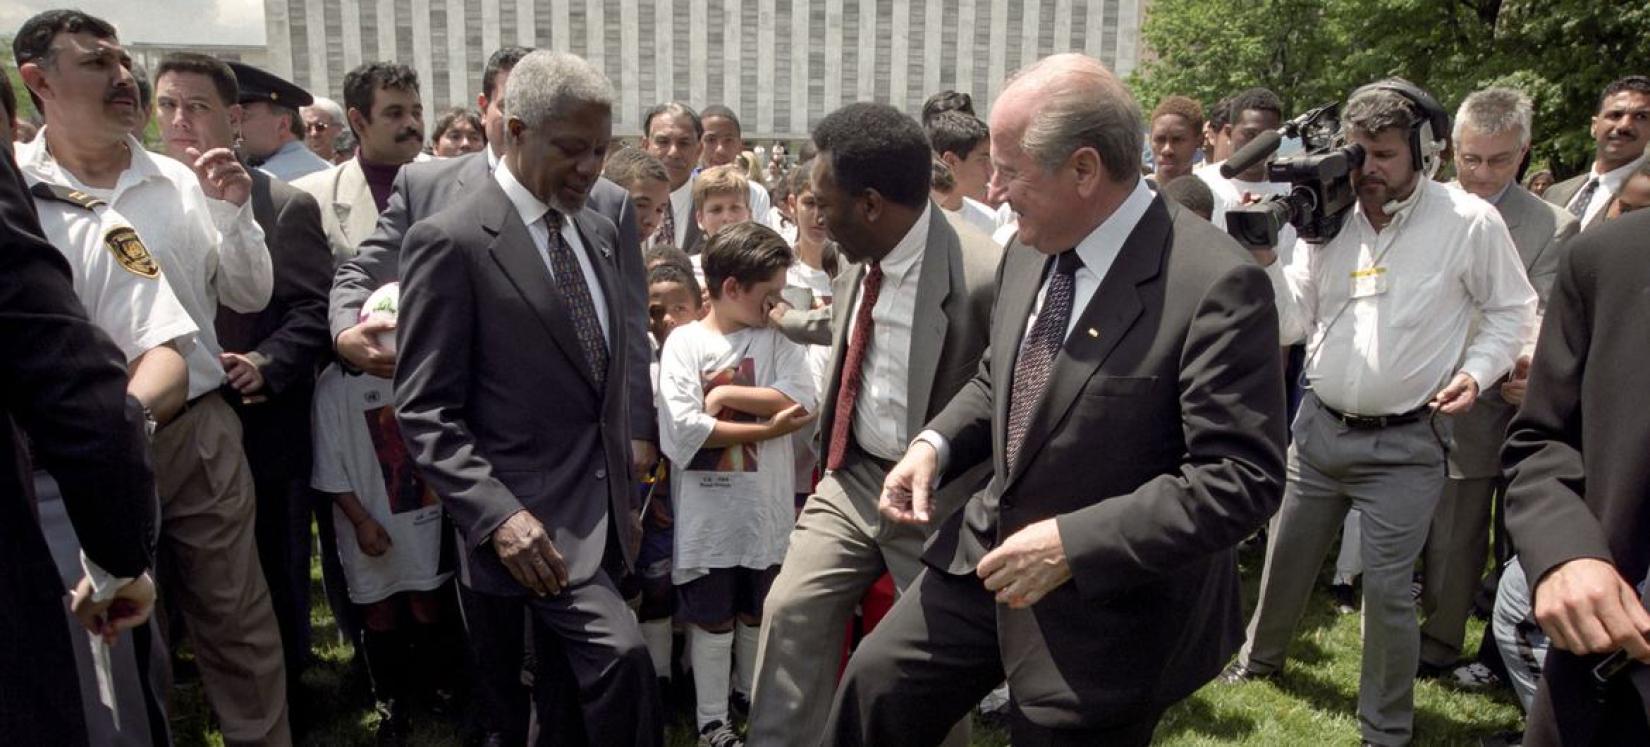 [Da esquerda para a direita] ao redor de uma bola de futebol estão o ex-secretário-geral da ONU Kofi Annan, o astro do futebol brasileiro Pelé e o presidente da FIFA, Joseph Blatter, em uma coletiva de imprensa anunciando sua decisão de ingressar em um relacionamento cooperativo com a FIFA para promover as Nações Unidas.